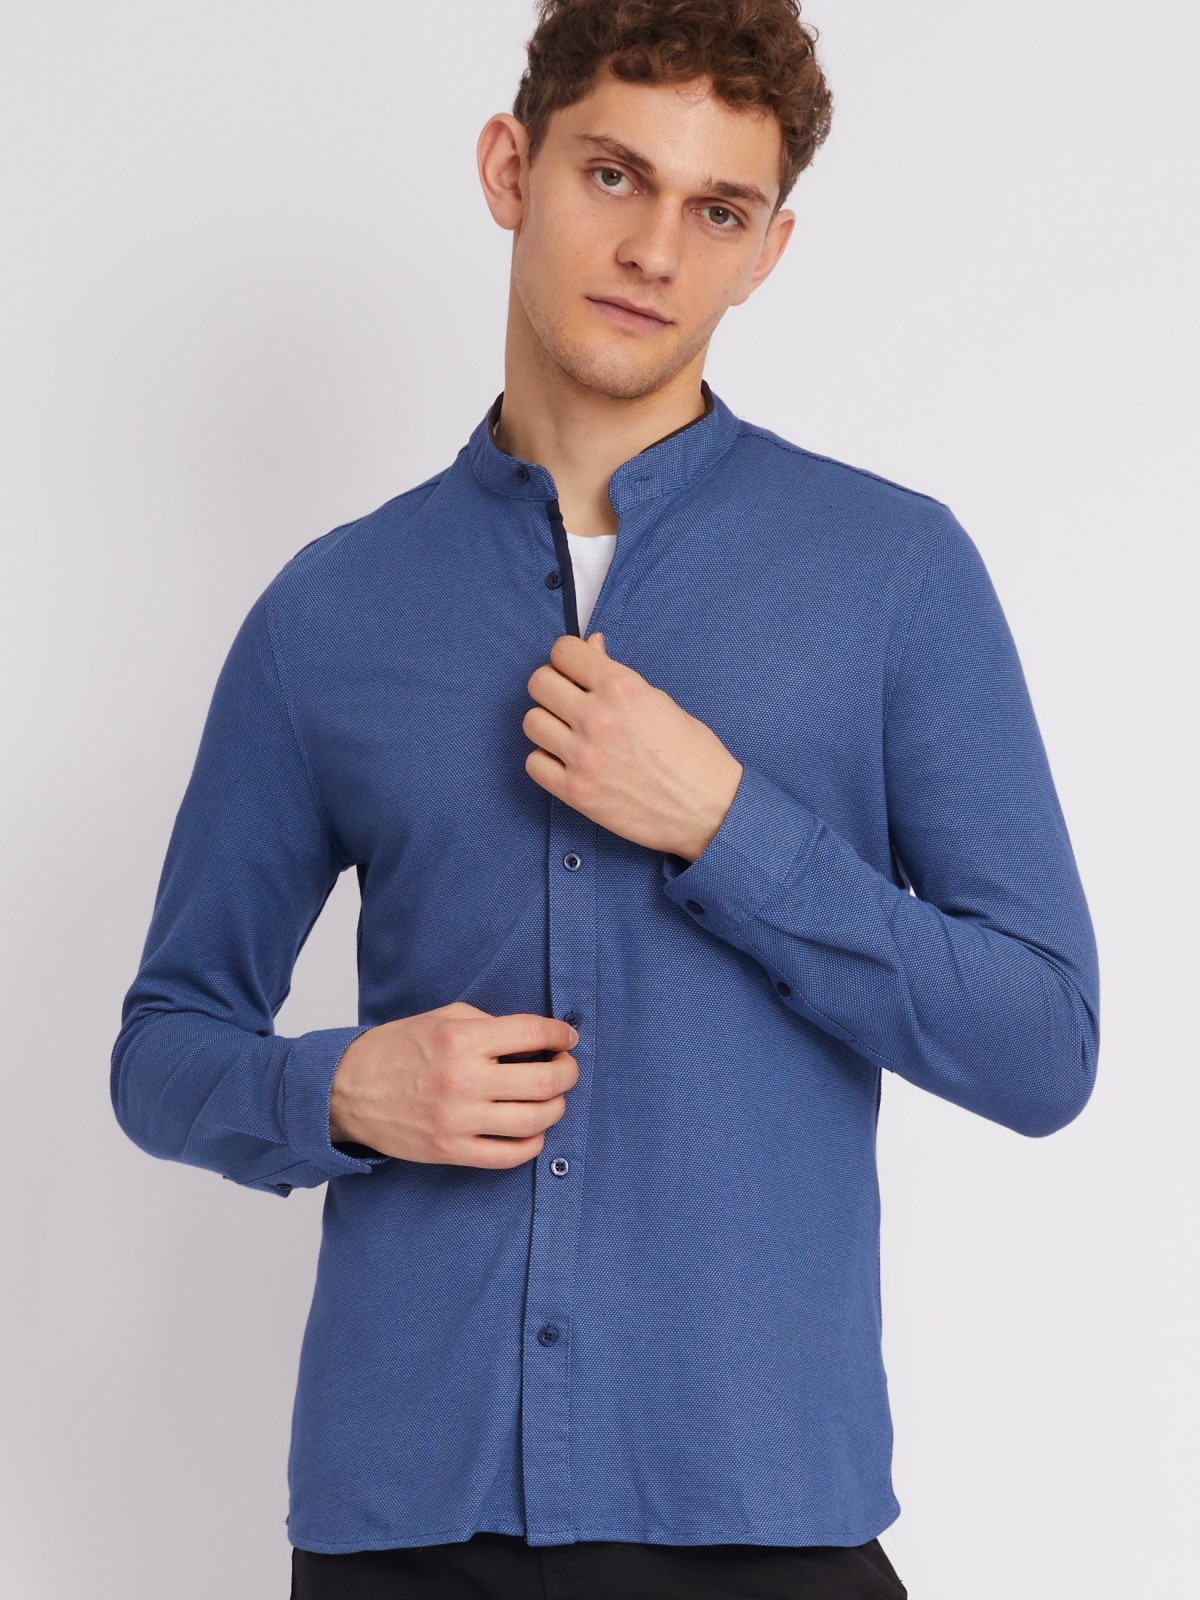 Офисная рубашка из хлопка с воротником-стойкой и длинным рукавом zolla 012322159071, цвет темно-синий, размер M - фото 1